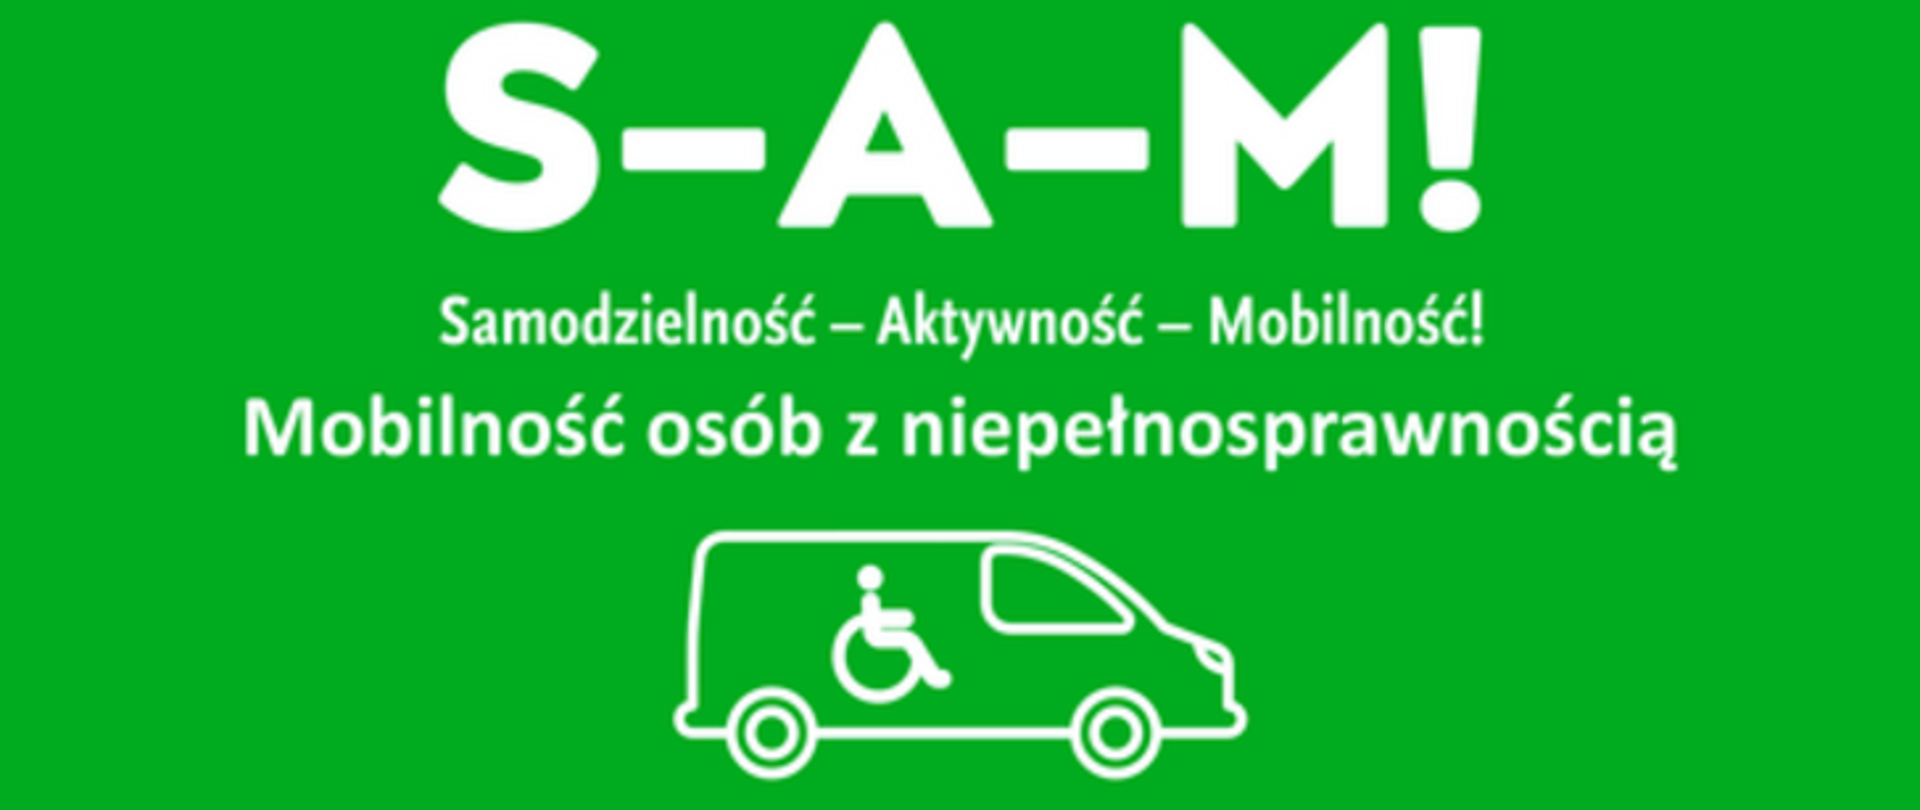 Logotyp rządowego programu realizowanego przez Państwowy Fundusz Rehabilitacji Osób Niepełnosprawnych - Samodzielność - Aktywność - Mobilność!. Mobilność dla osób z niepełnosprawnością. Białe napisy na zielonym tle.